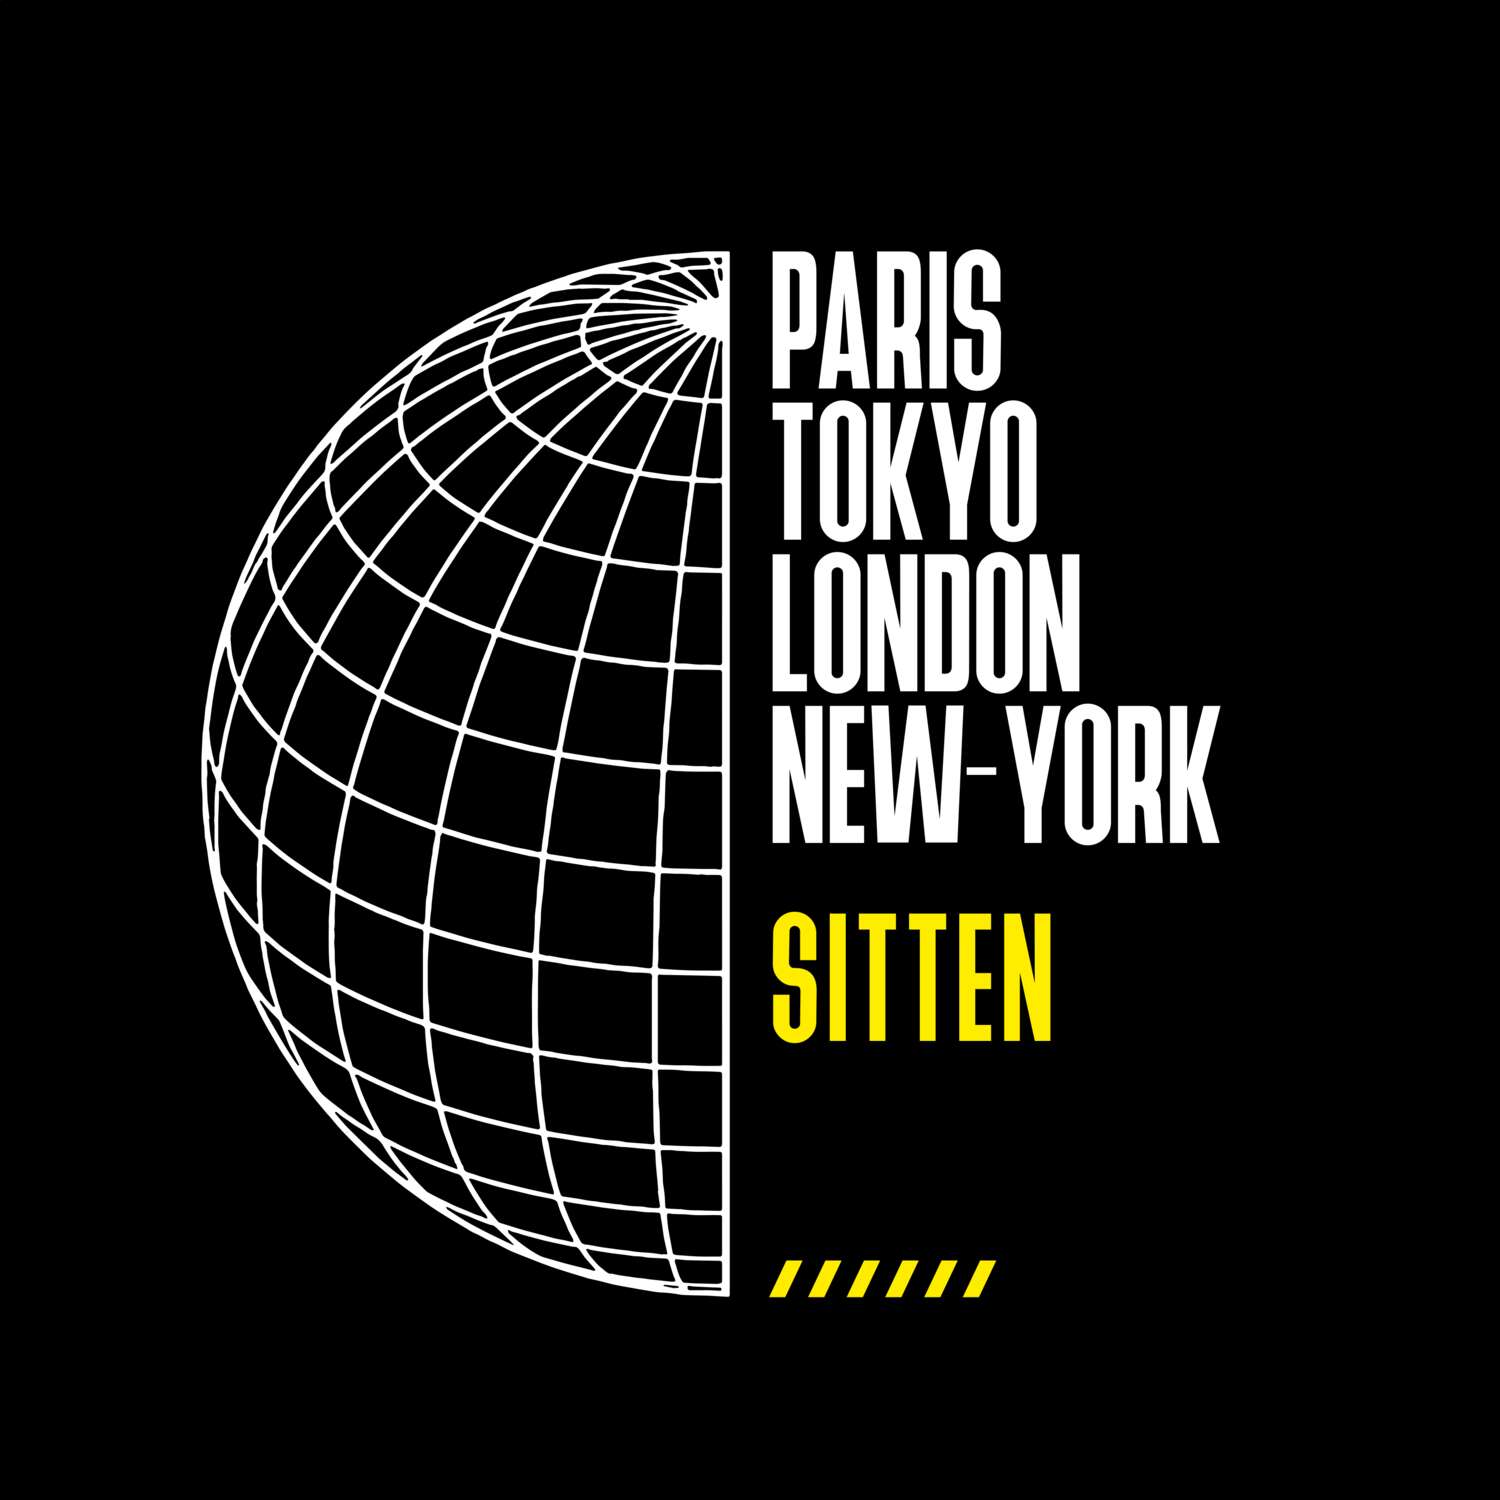 Sitten T-Shirt »Paris Tokyo London«